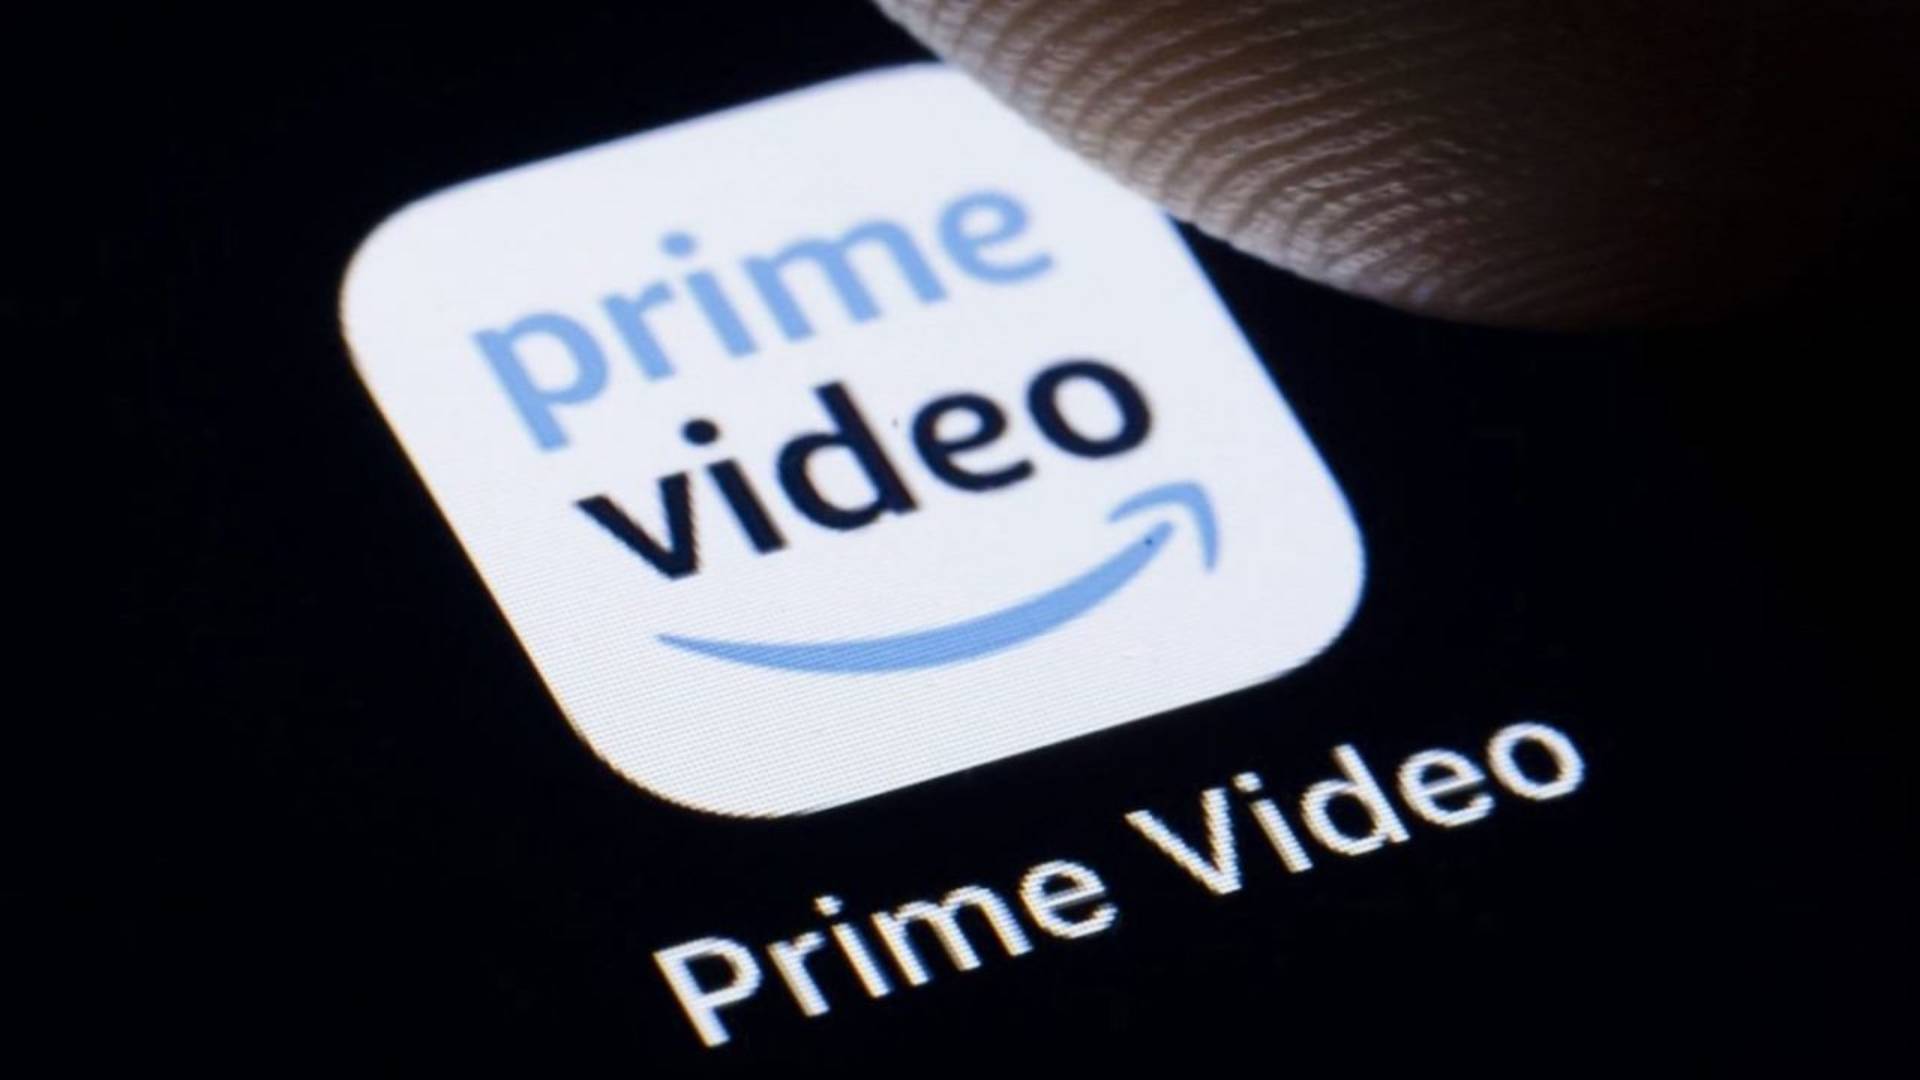 Amazon Prime Video anuncia três novas séries originais brasileiras